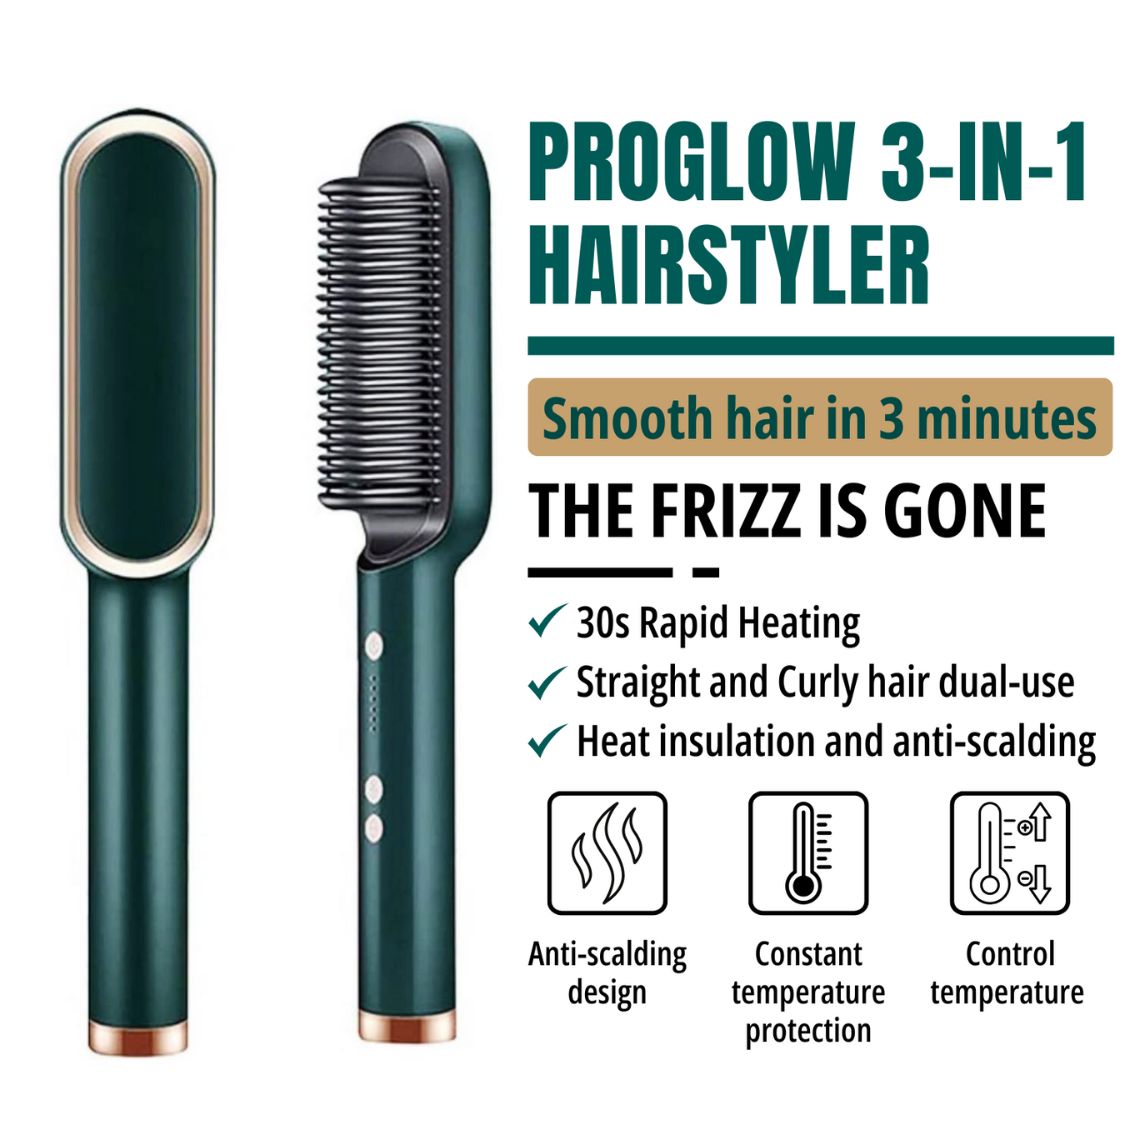 ProGlow 3-in-1 Hair Styler